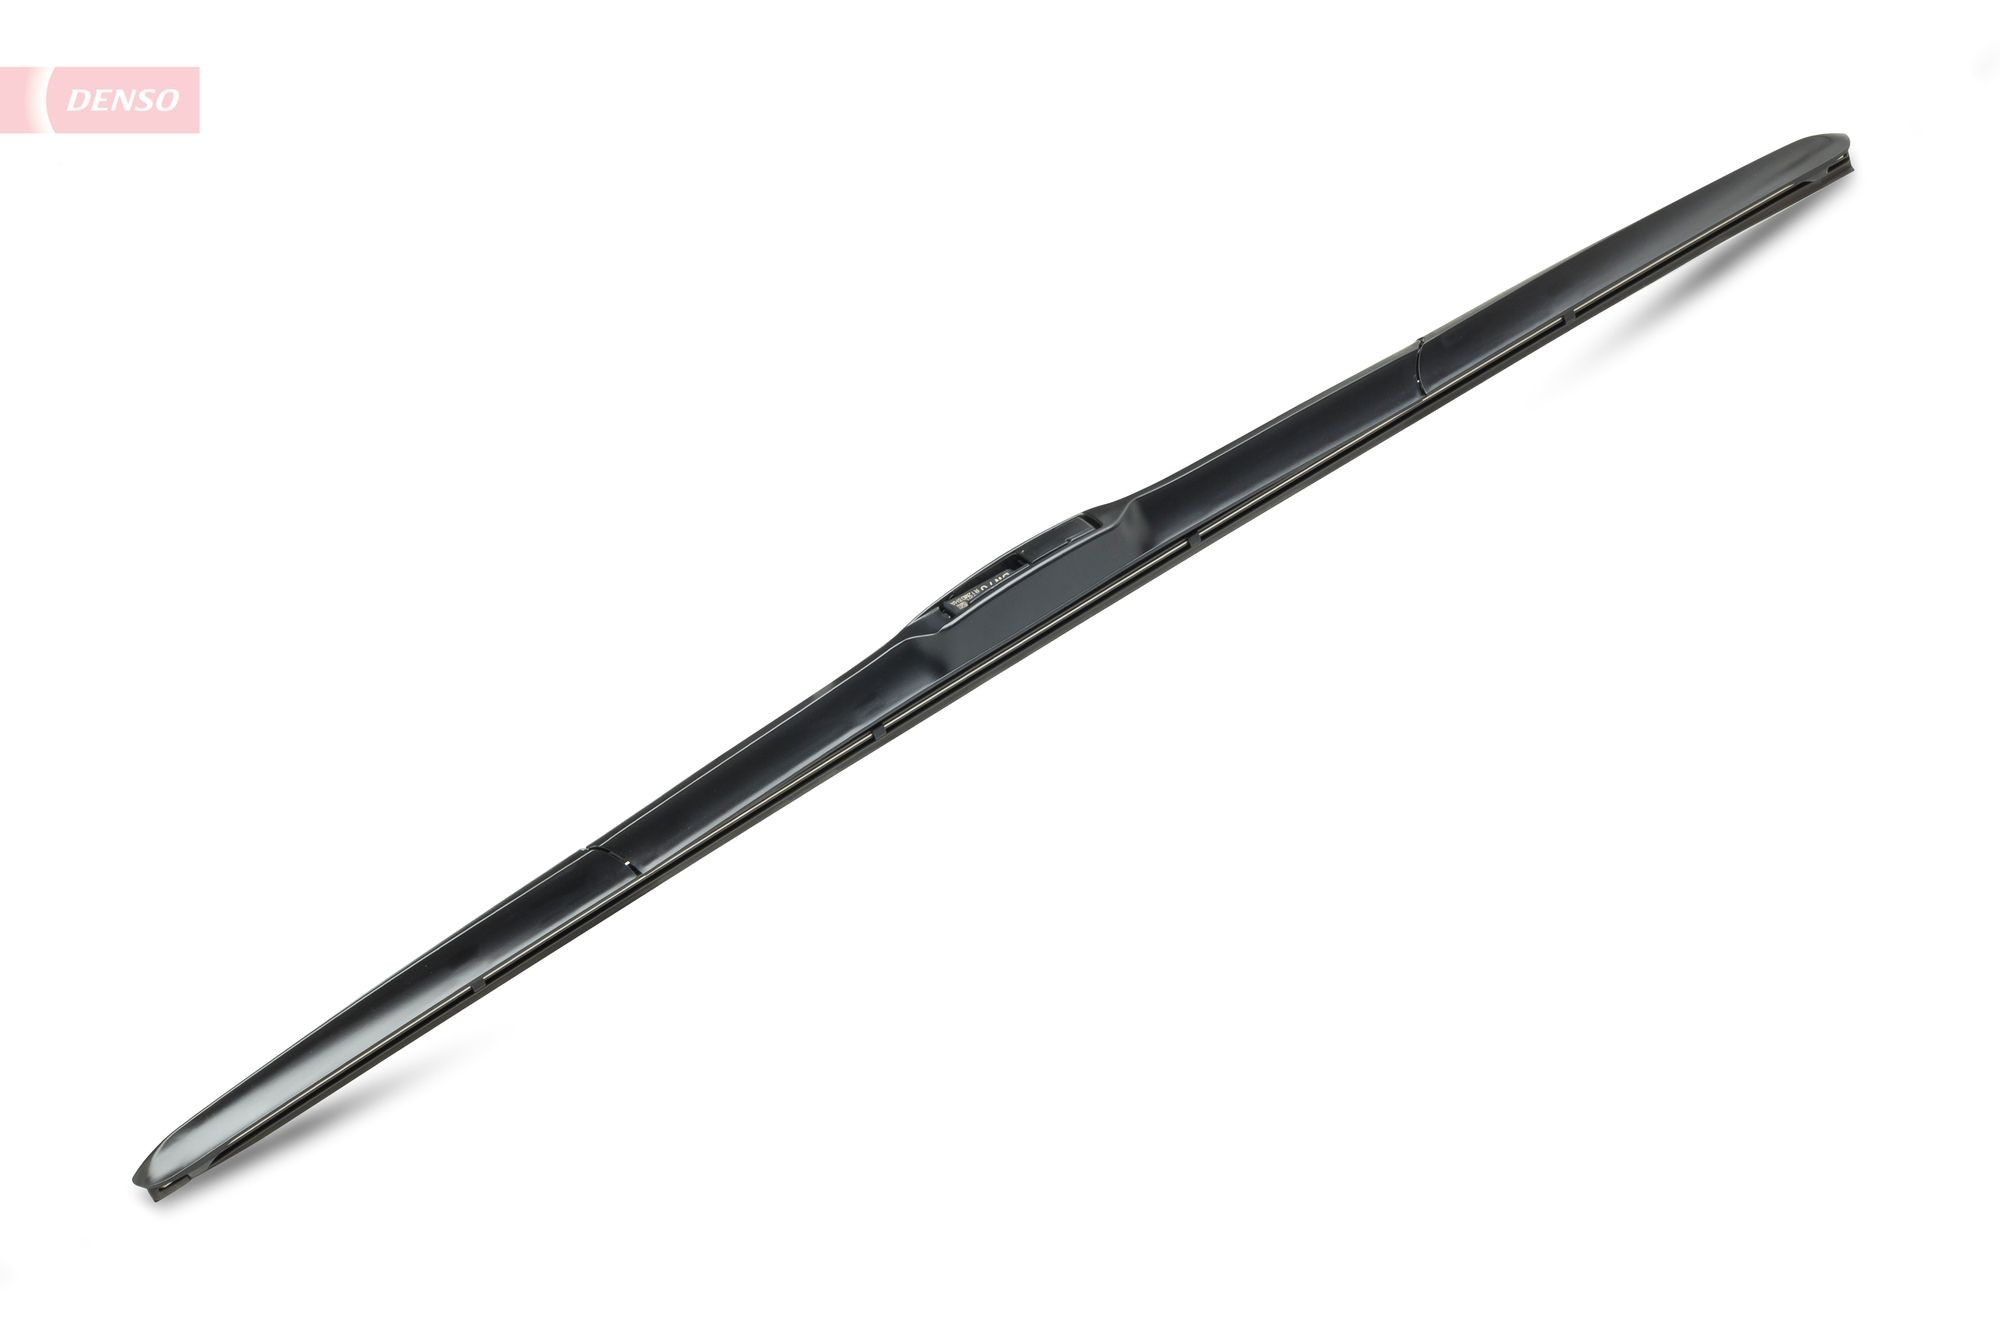 DENSO Hybrid 700 mm, Hybrid Wiper Blade, 28 Inch Wiper blades DU-070R buy